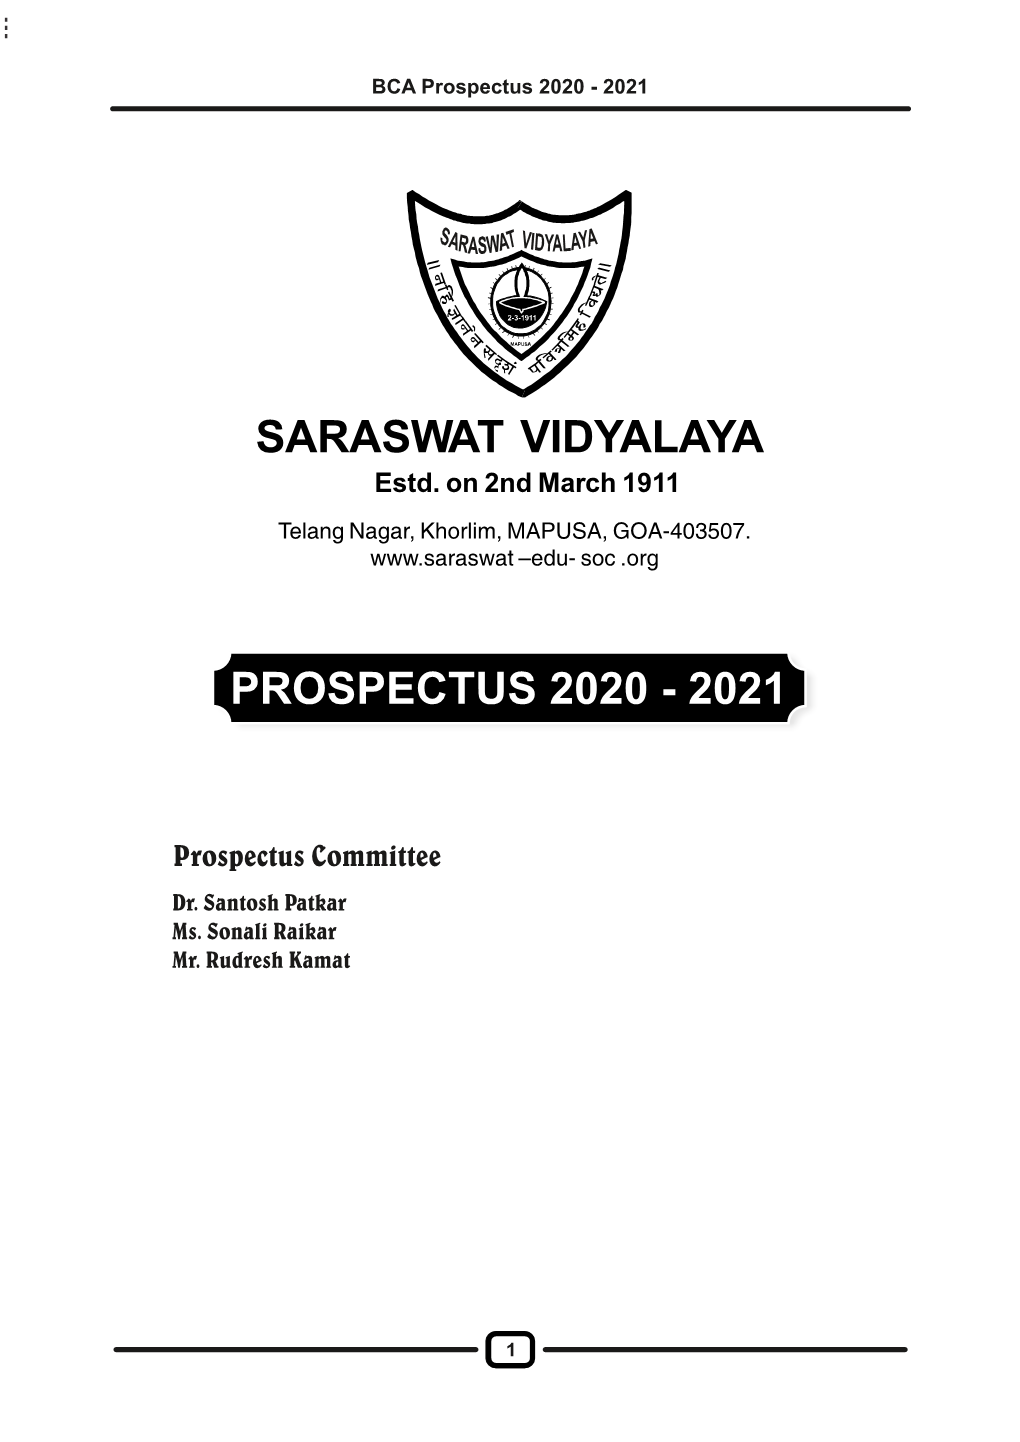 Prospectus 2020 - 2021